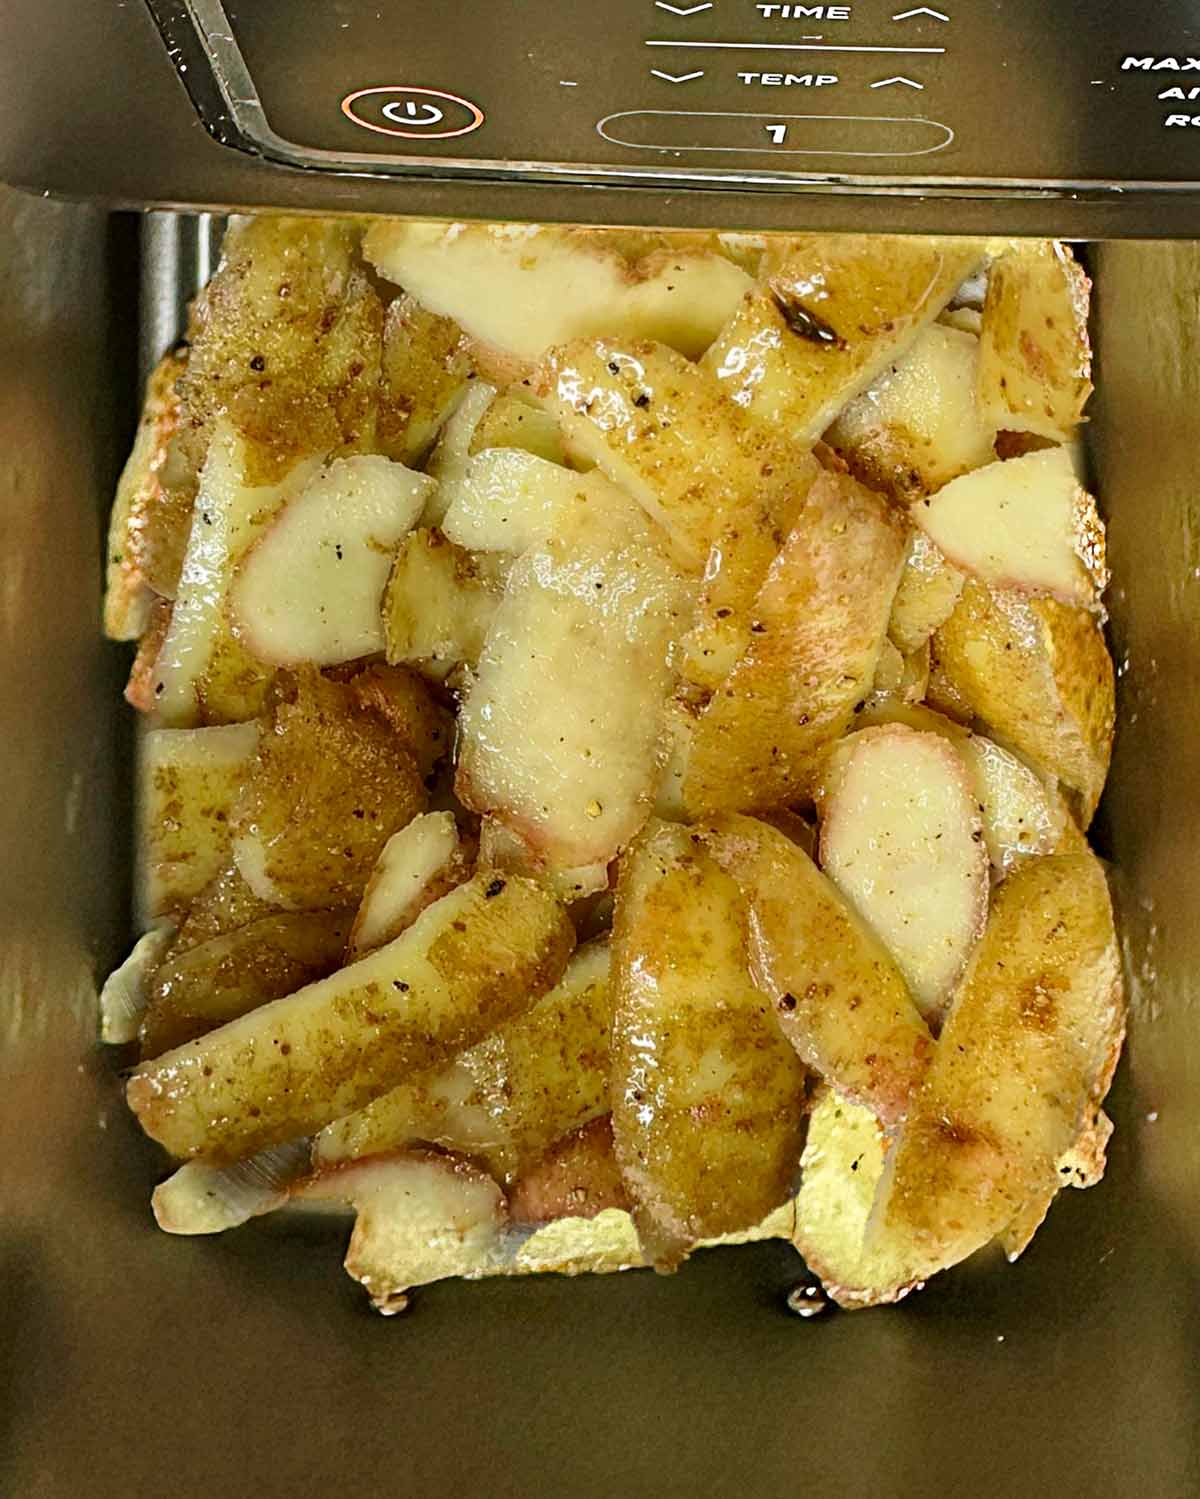 Potato peelings in an air fryer basket.